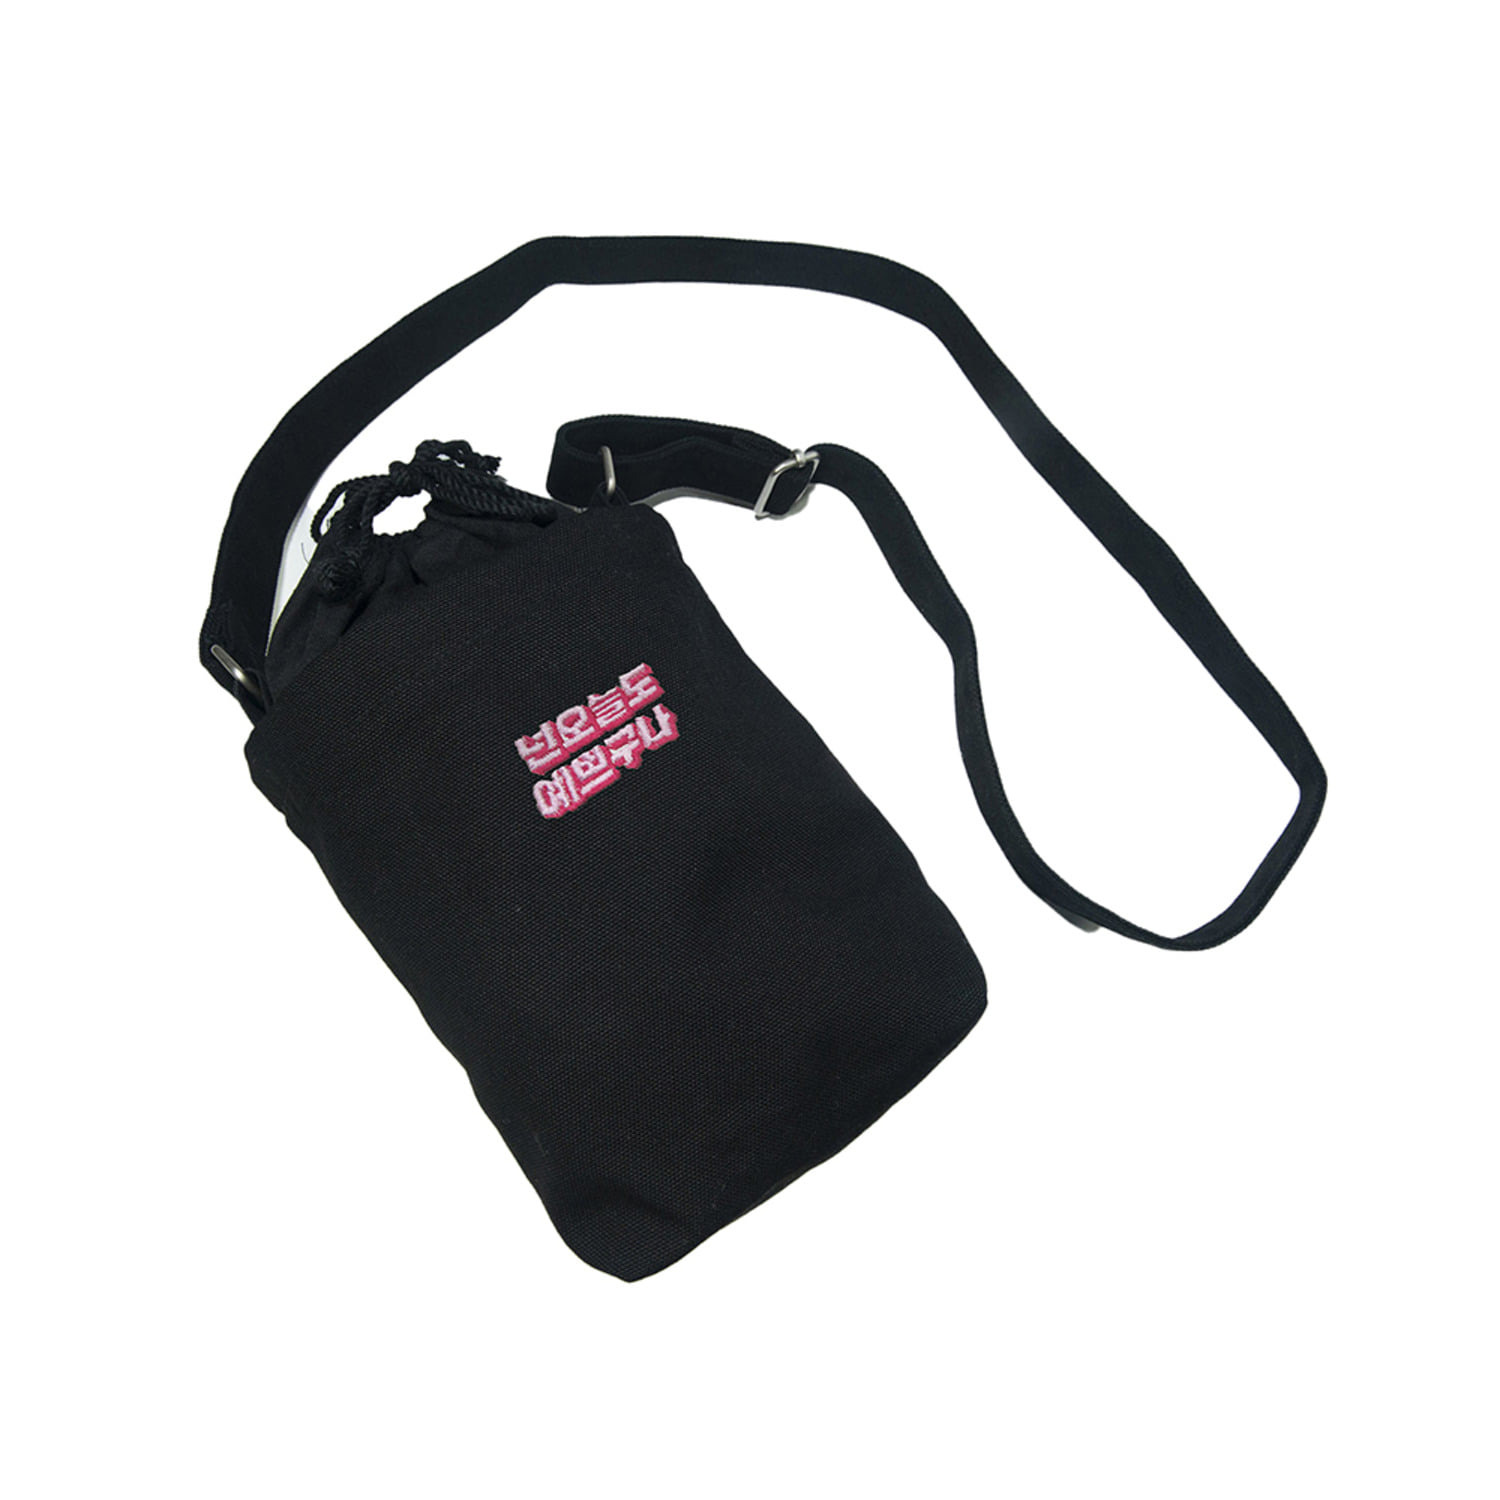 예쁘구나 스몰 캔버스 숄더백 블랙 Pretty small canvas shoulder bag (Black)